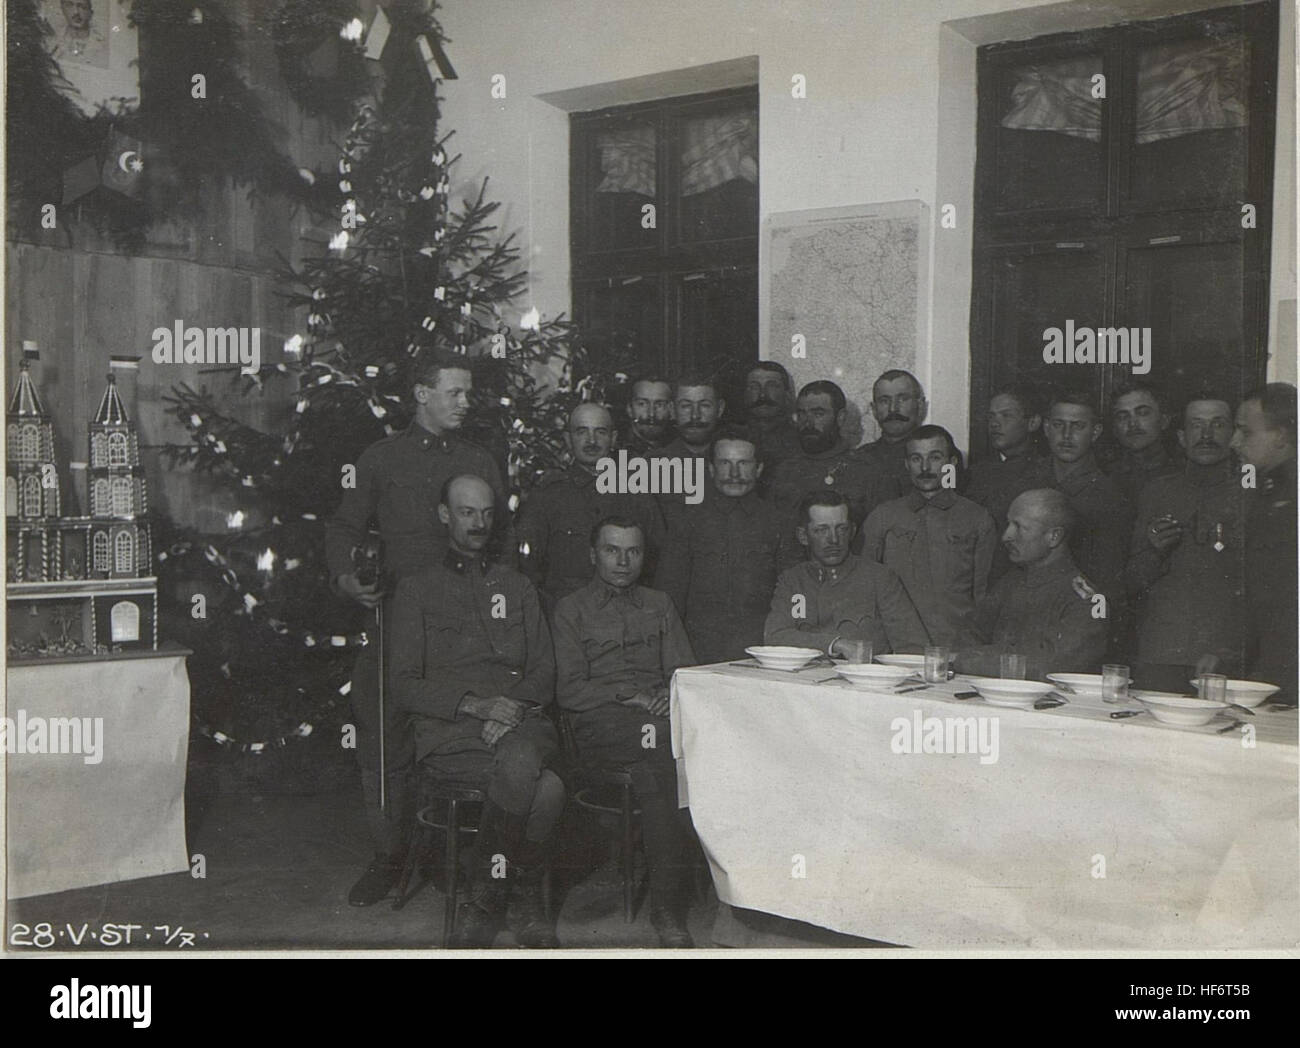 Weihnachtsfeier 1917 der k.u.k.V.St.1-7 in Unterwikow 24.12.17. 15664222) Stock Photo